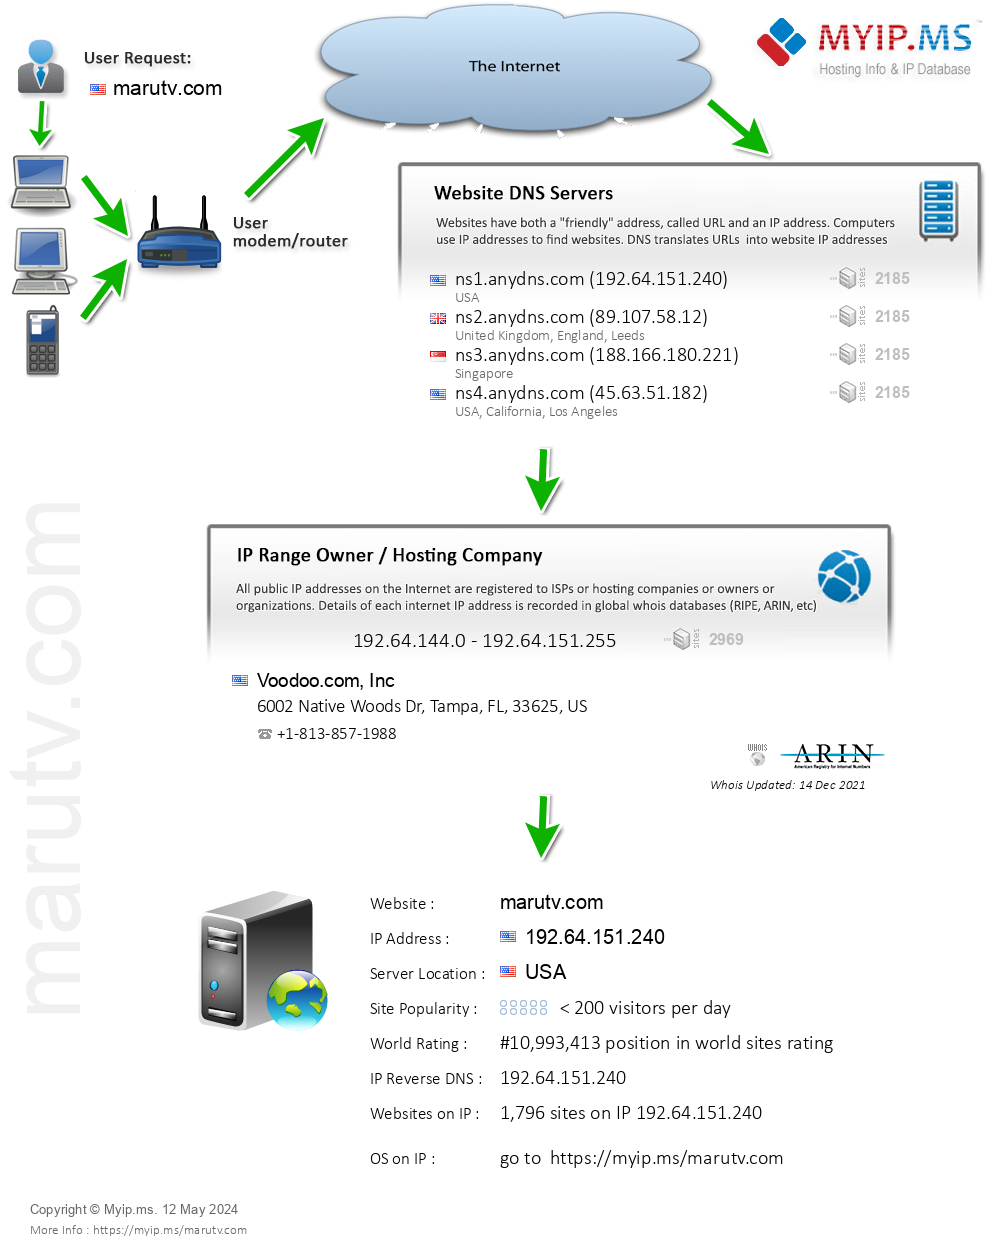 Marutv.com - Website Hosting Visual IP Diagram